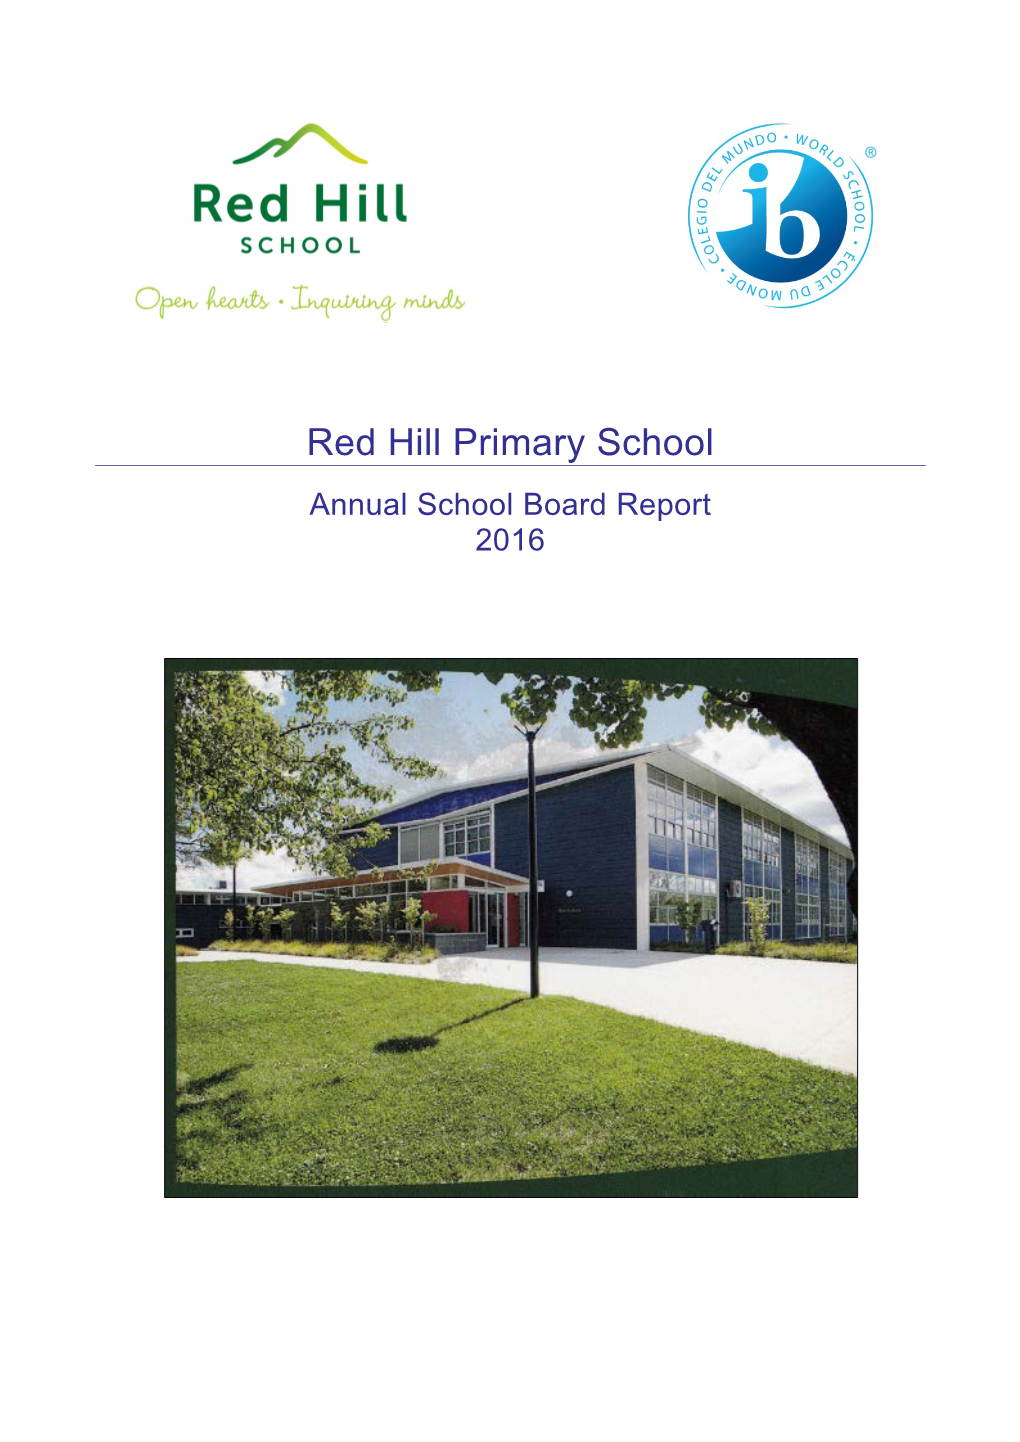 Red Hill Primary School Annual School Board Report 2016